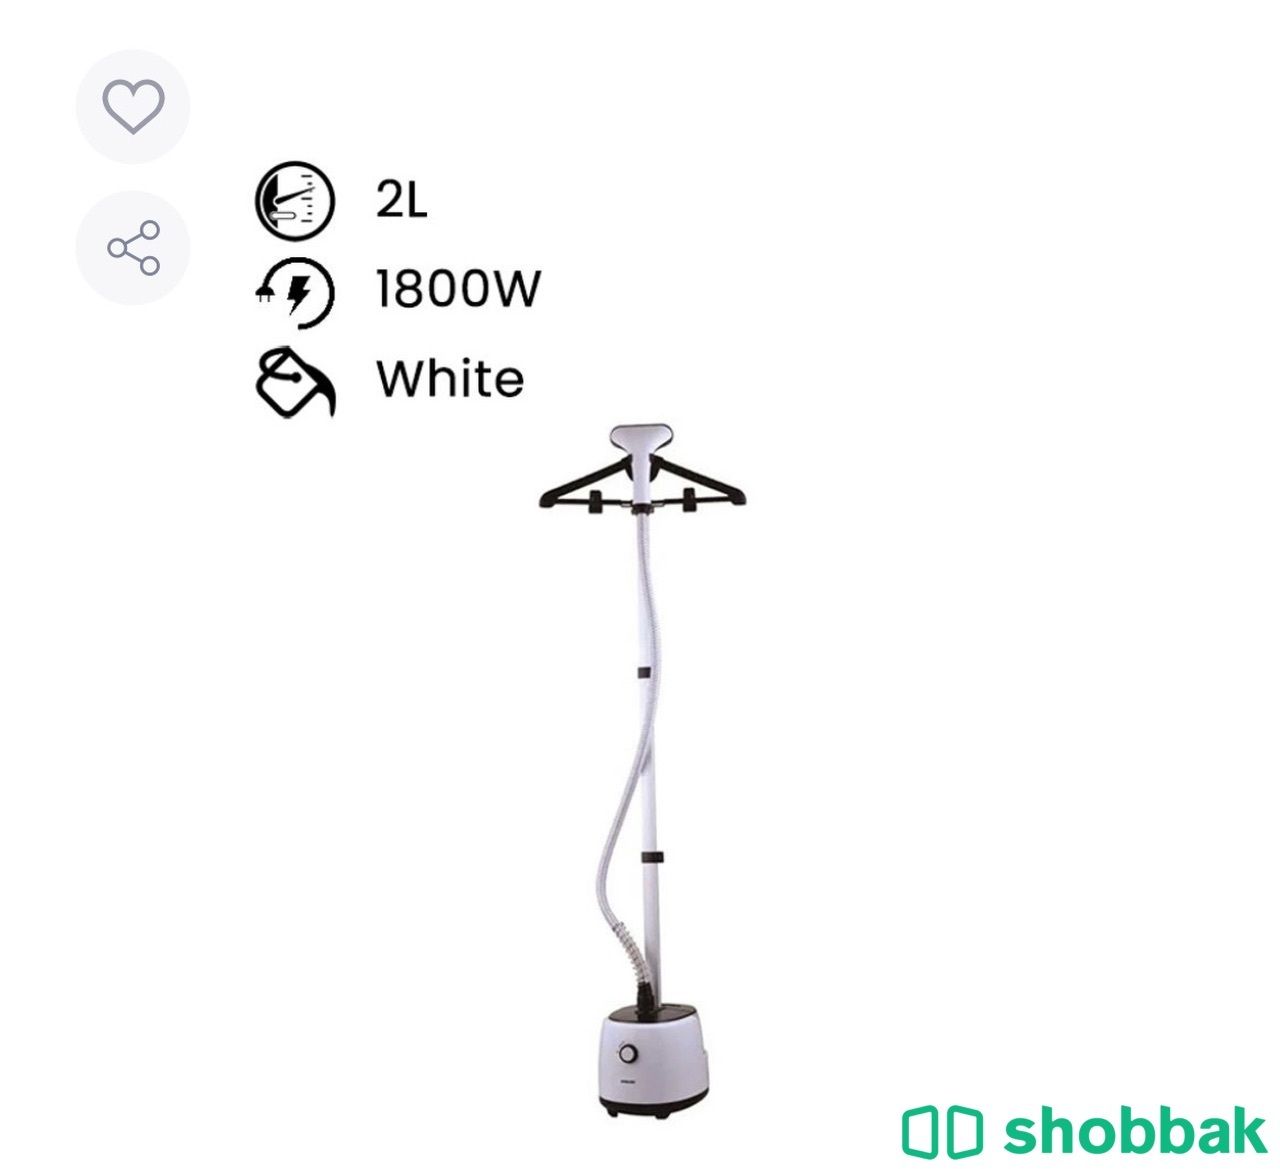 جهاز كي الملابس بالبخار ٢ لتر ١٨٠٠ وات NGS566 أبيض Shobbak Saudi Arabia